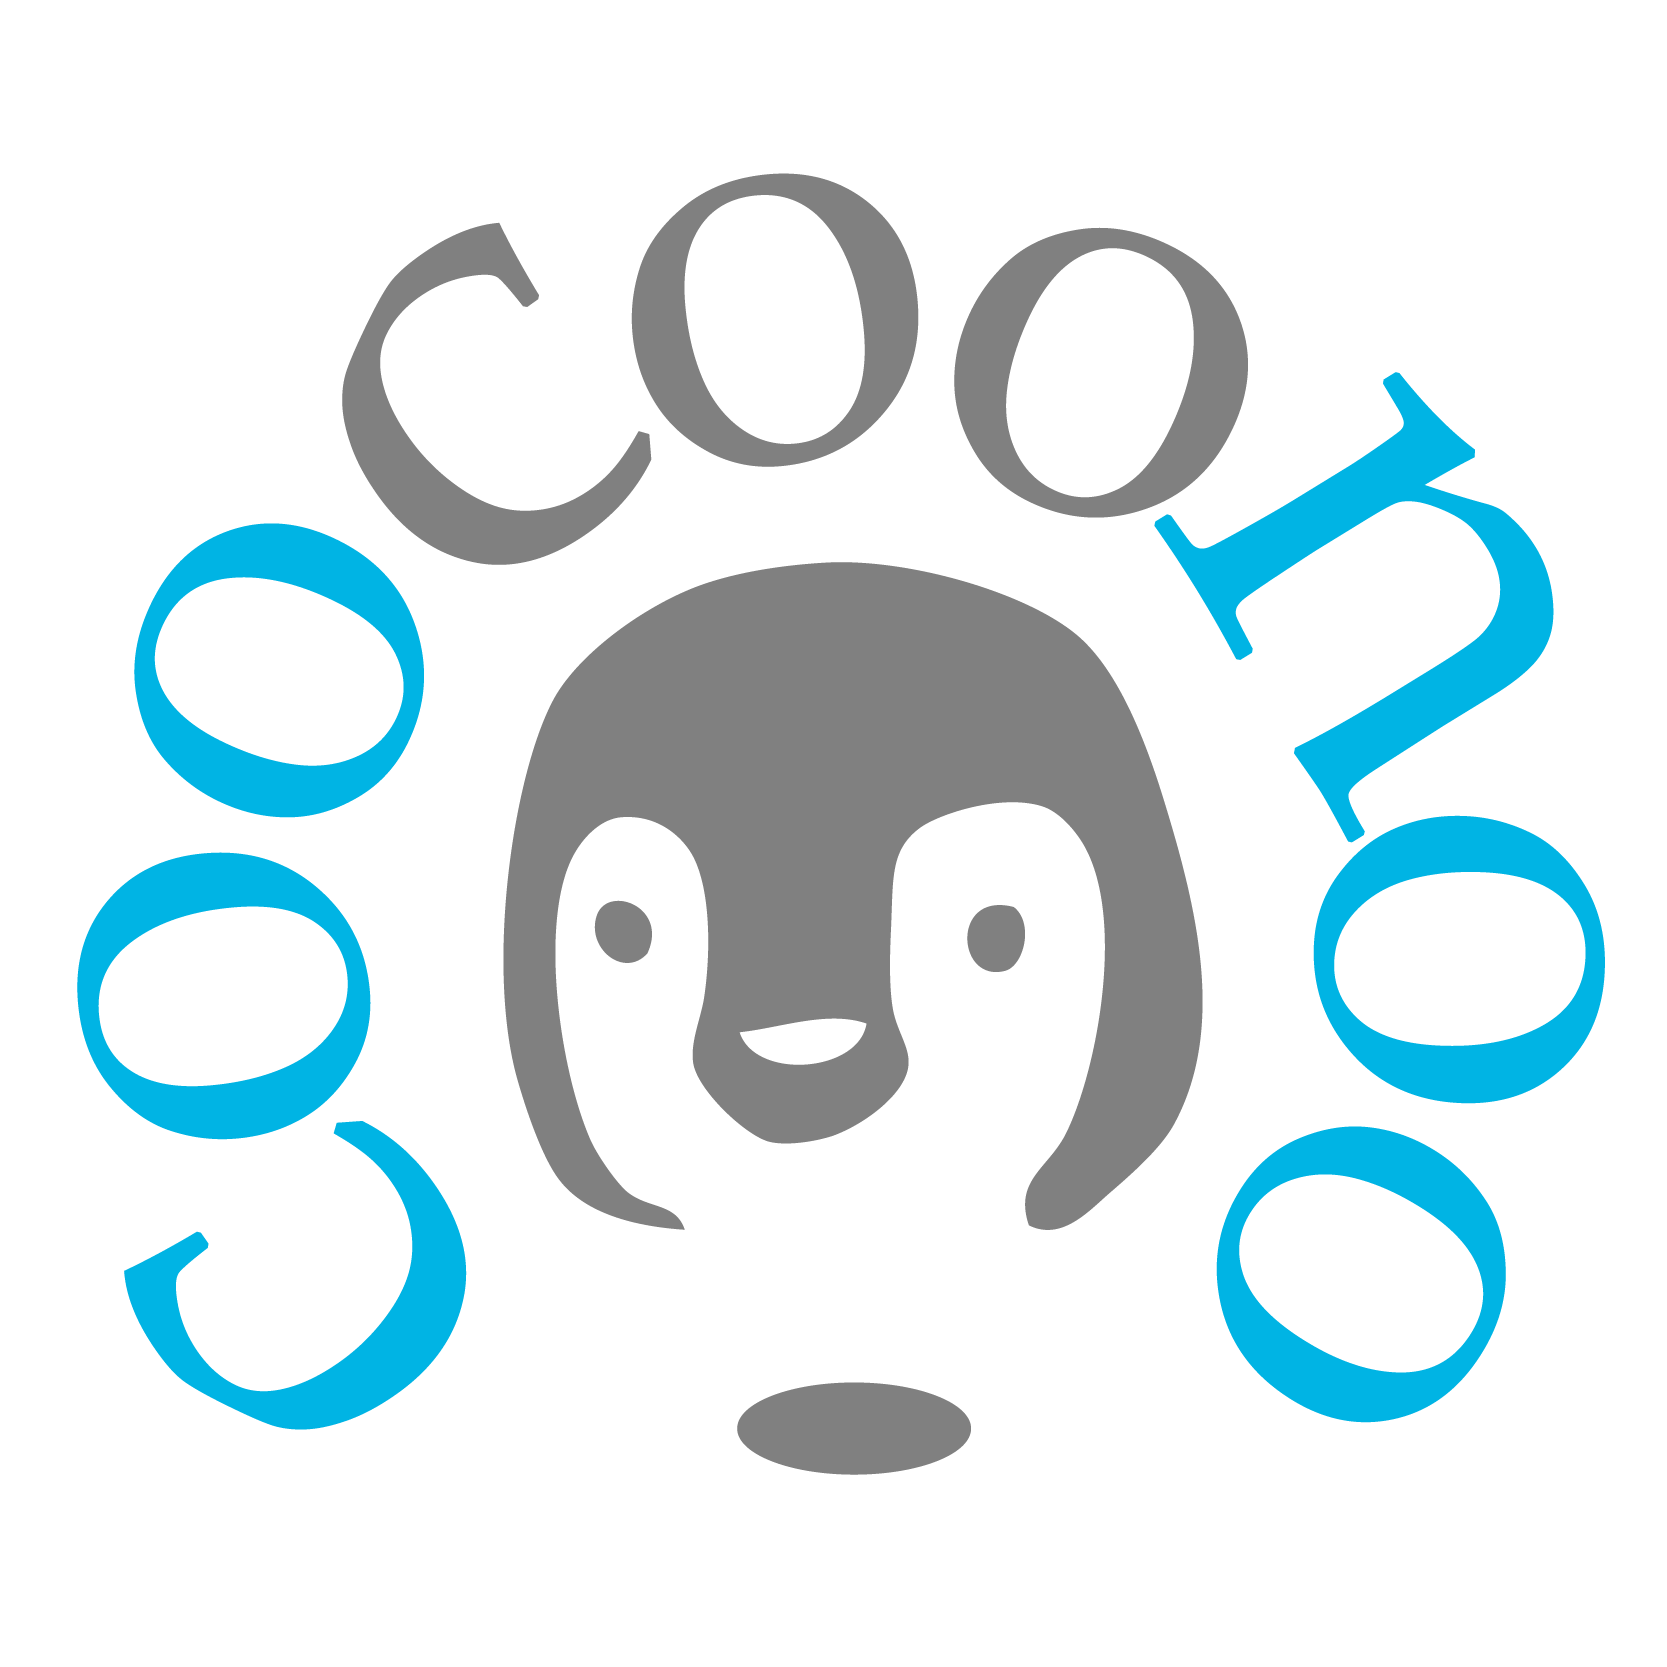 CooCooNoo